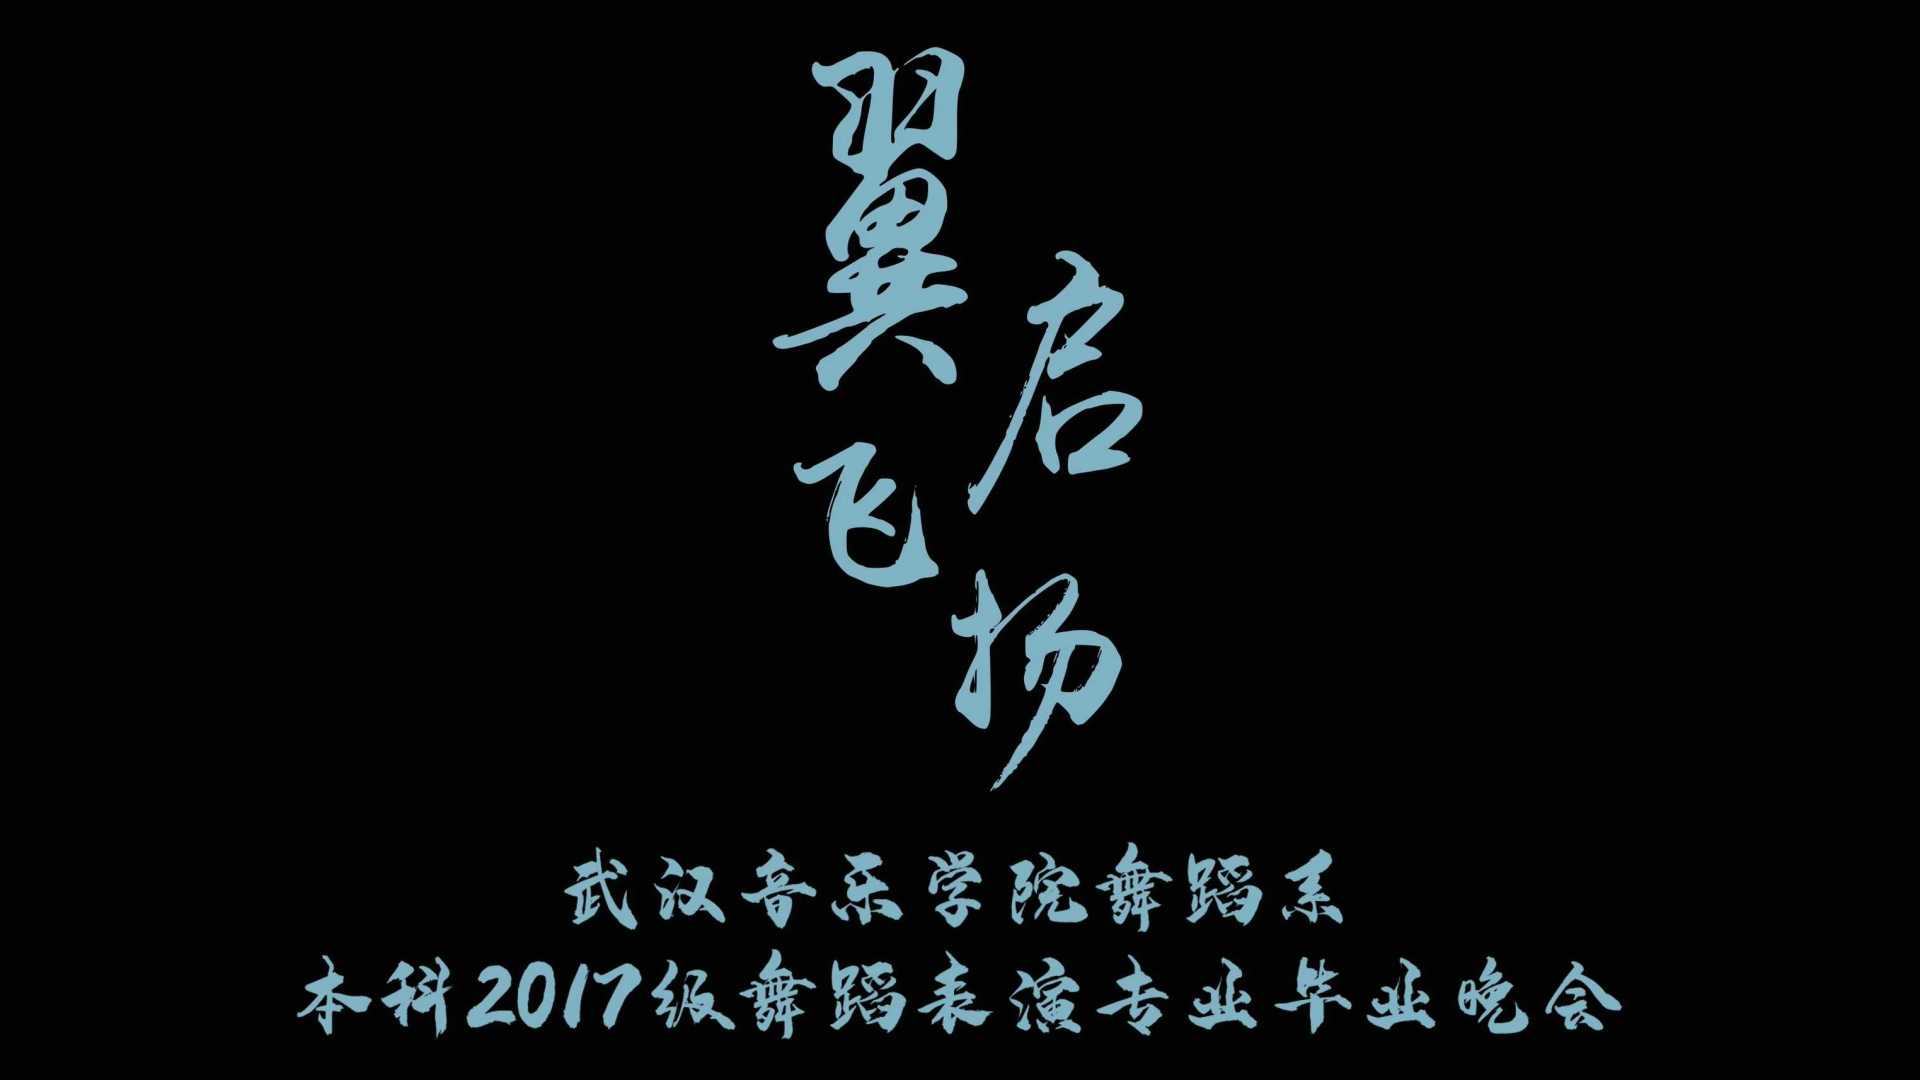 武汉音乐学院舞蹈系本科2017级毕业晚会宣传片